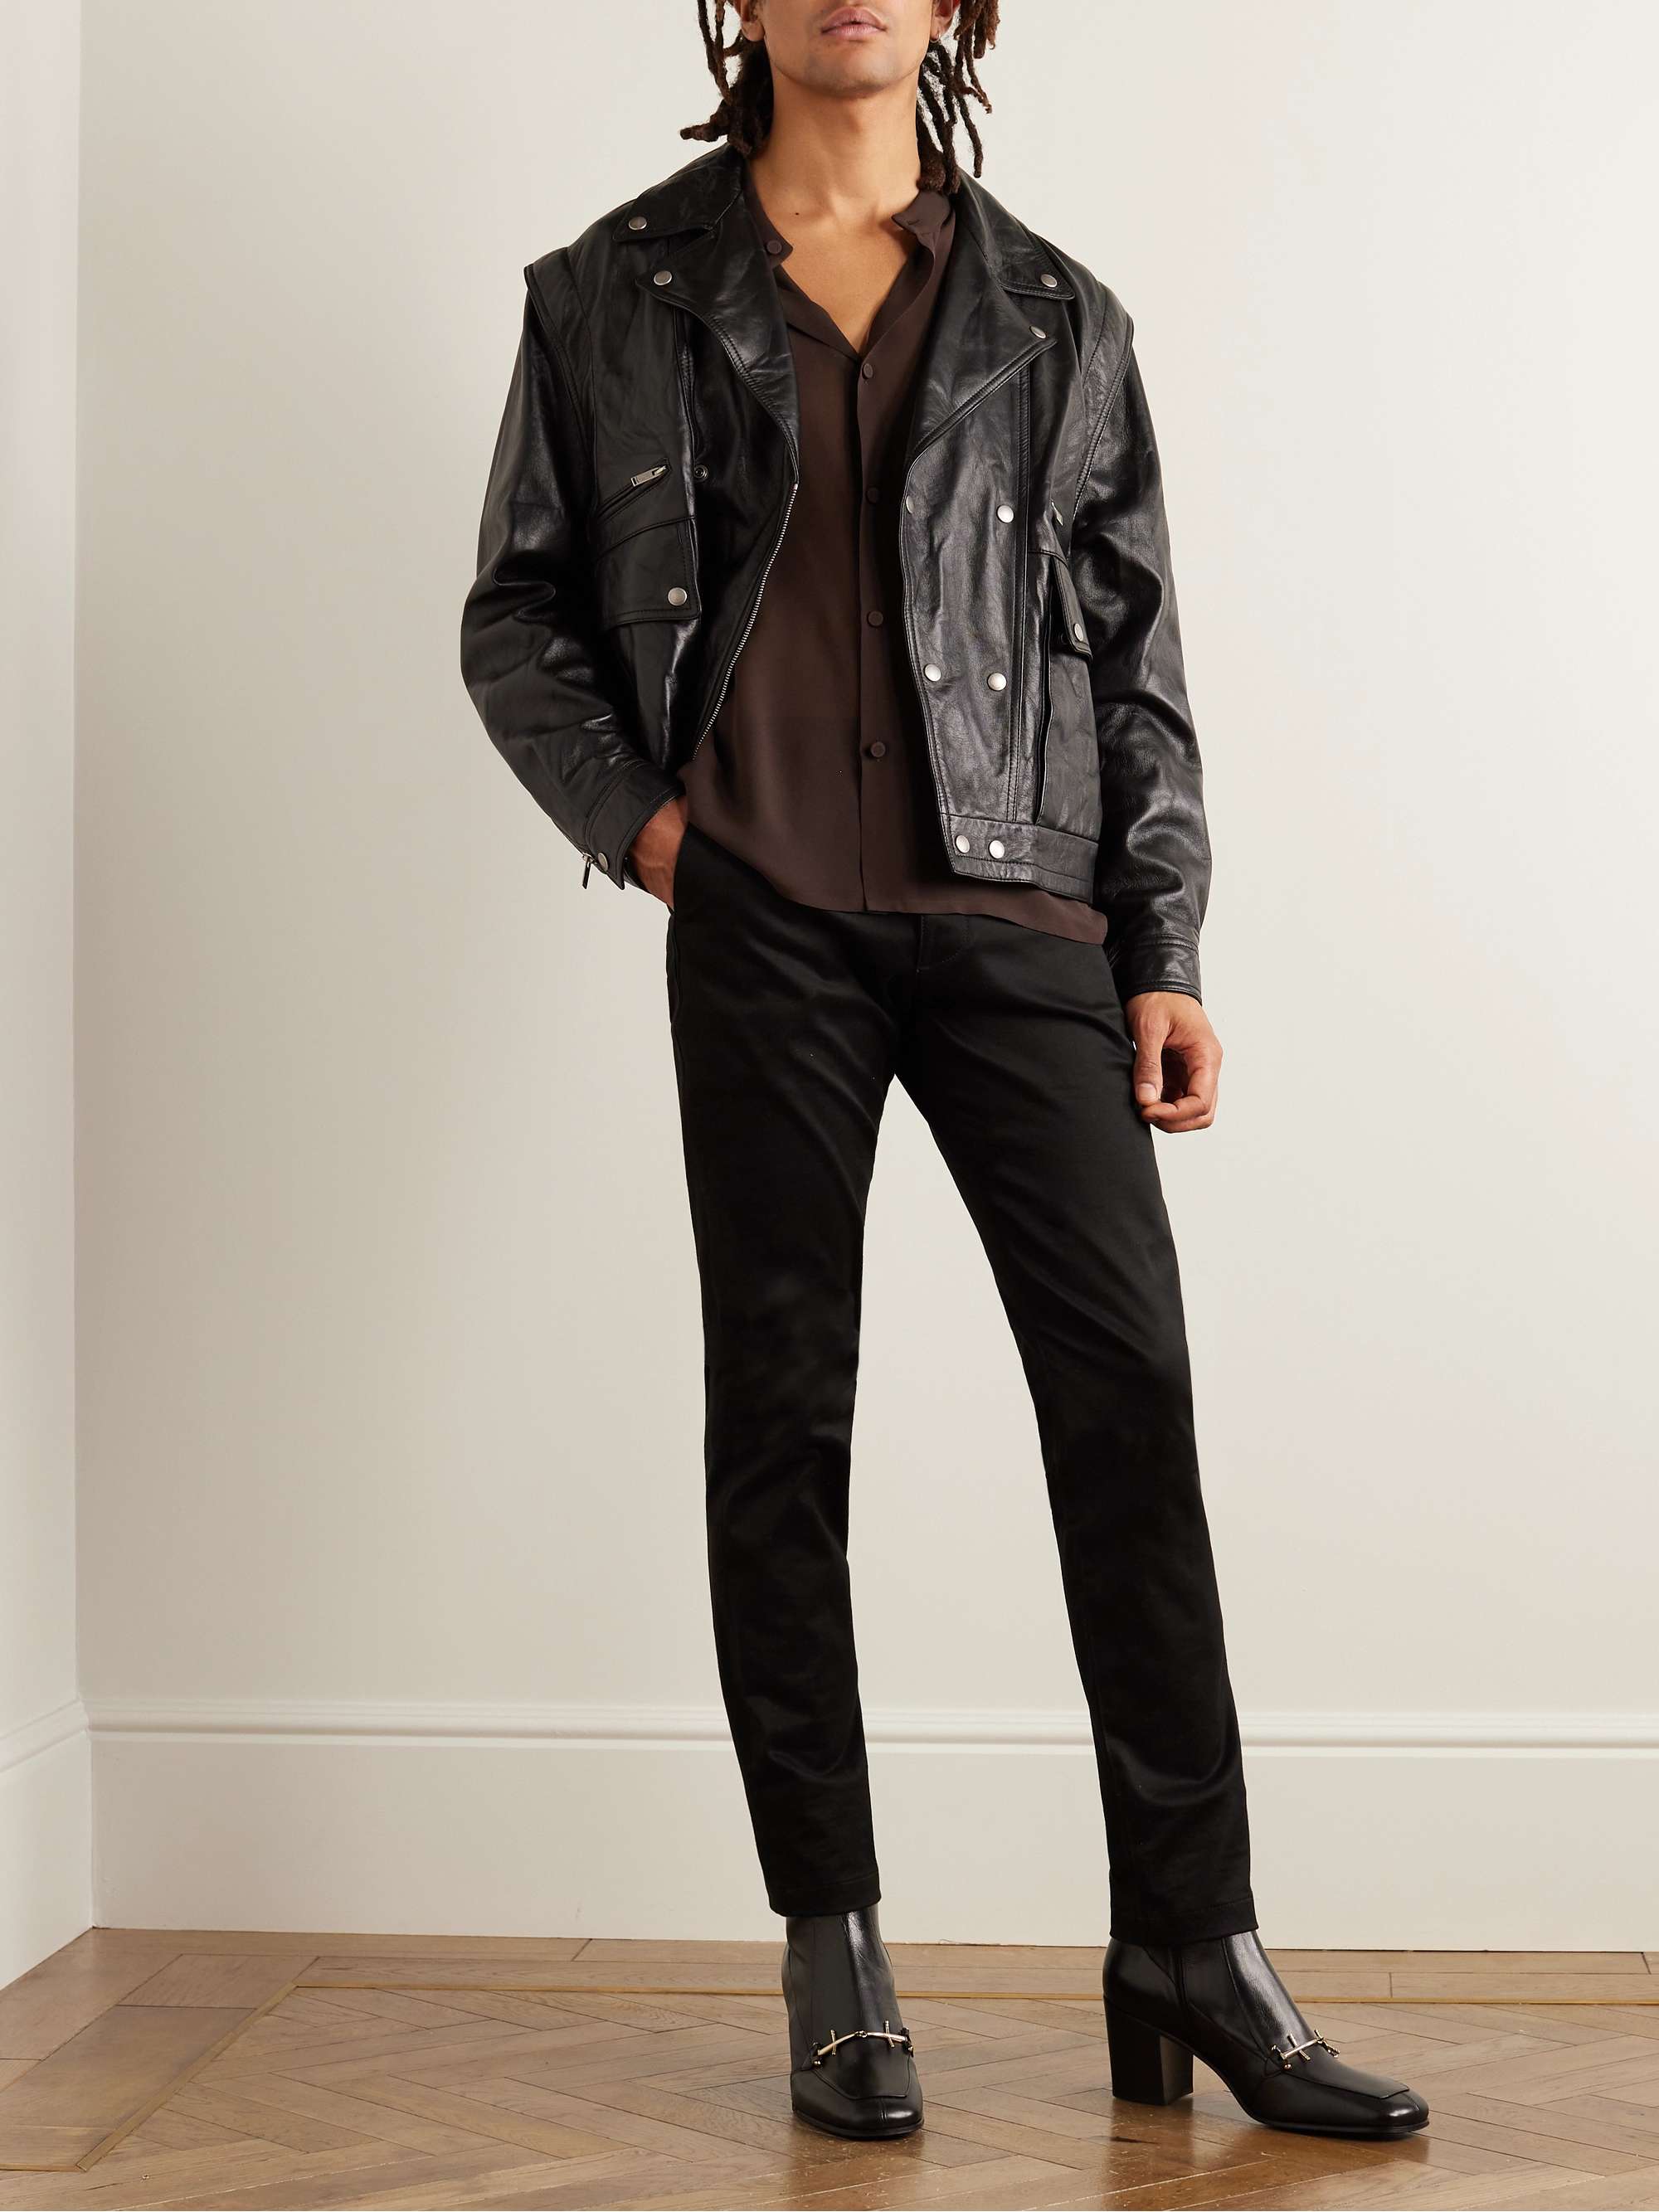 Imitation leather jacket - Black - Men | H&M IN-anthinhphatland.vn